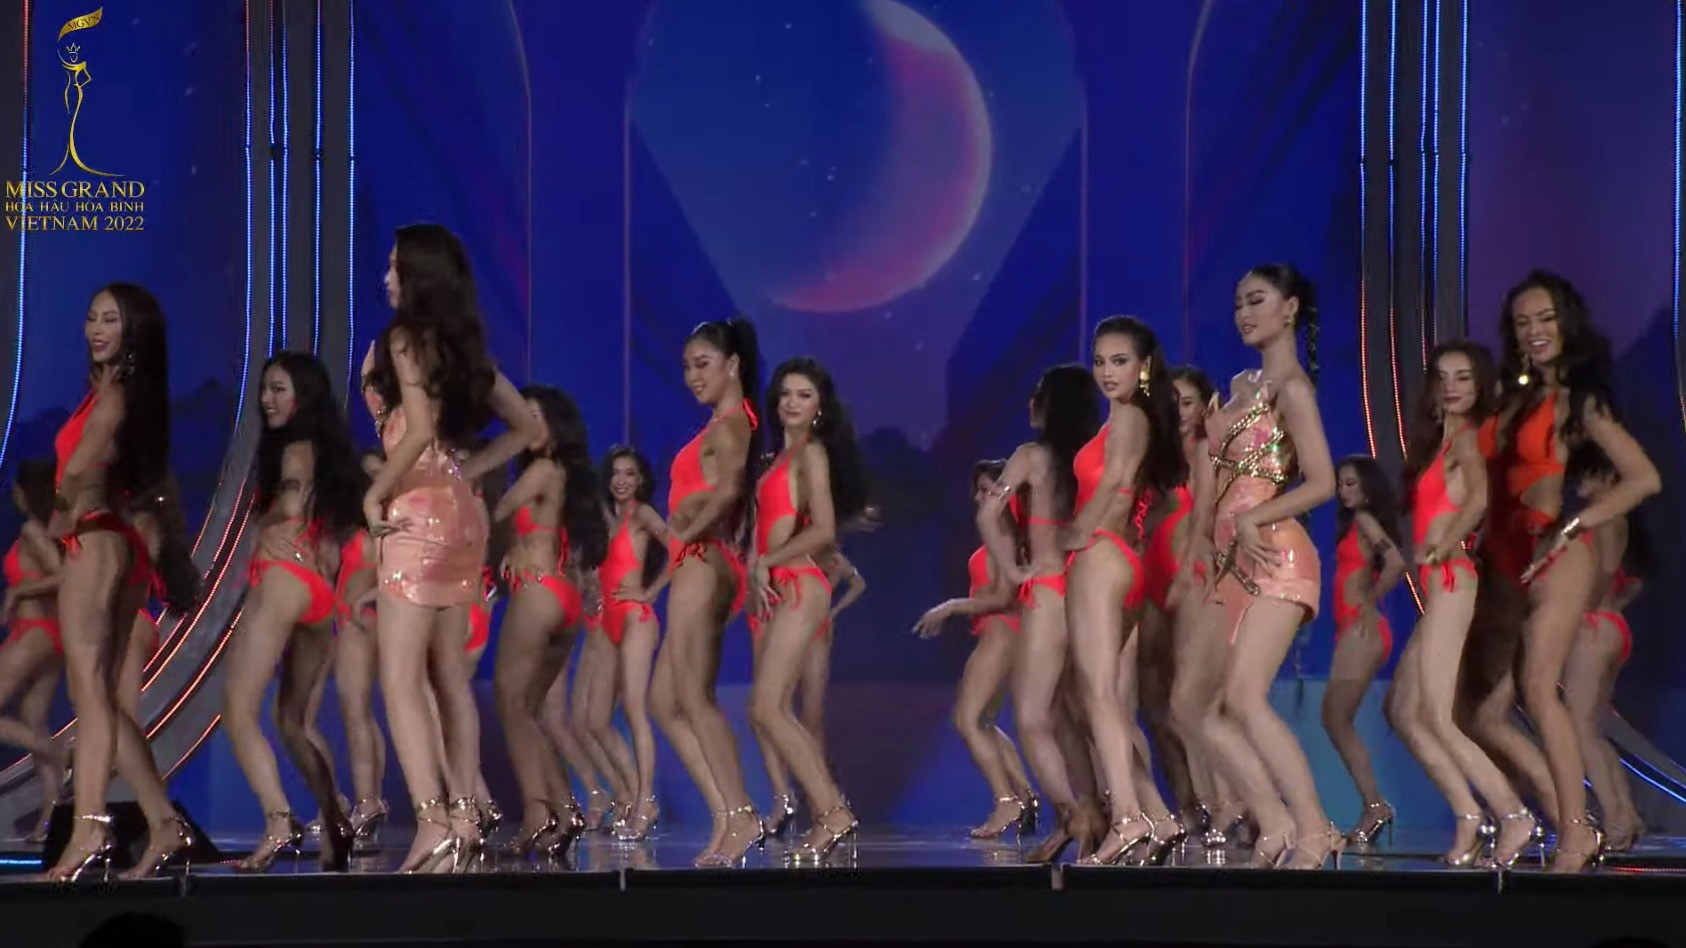 Đoàn Thiên Ân đăng quang Miss Grand Vietnam - Hoa hậu Hòa bình Việt Nam 2022 - 22